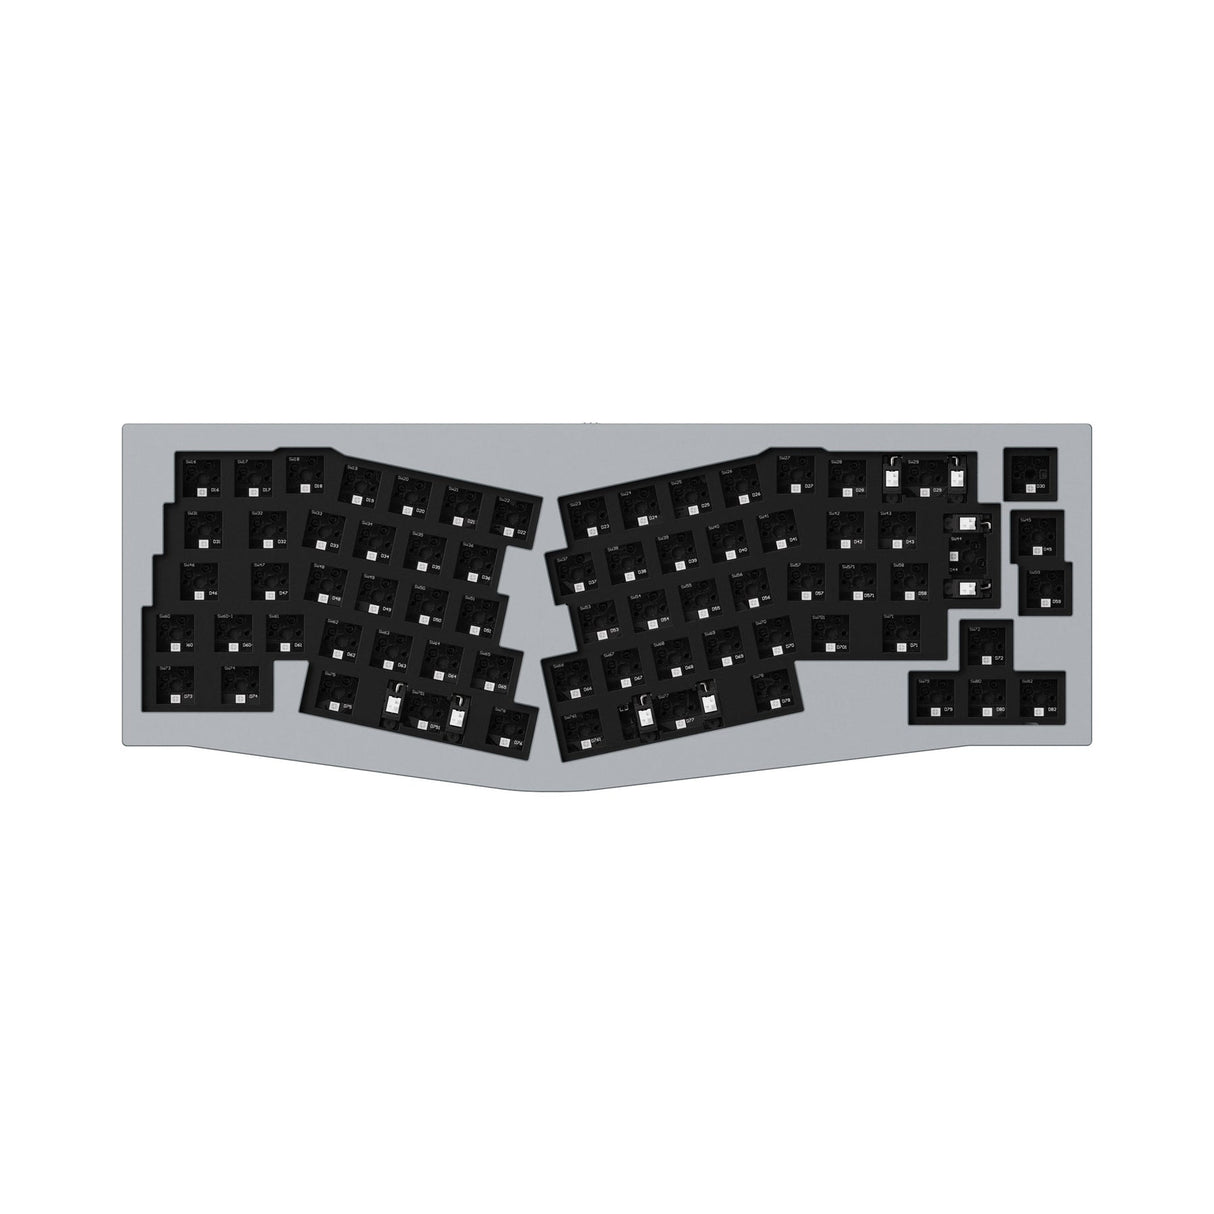 Keychron Q8 (Alice Layout) Colección de diseño ISO de teclado mecánico personalizado QMK